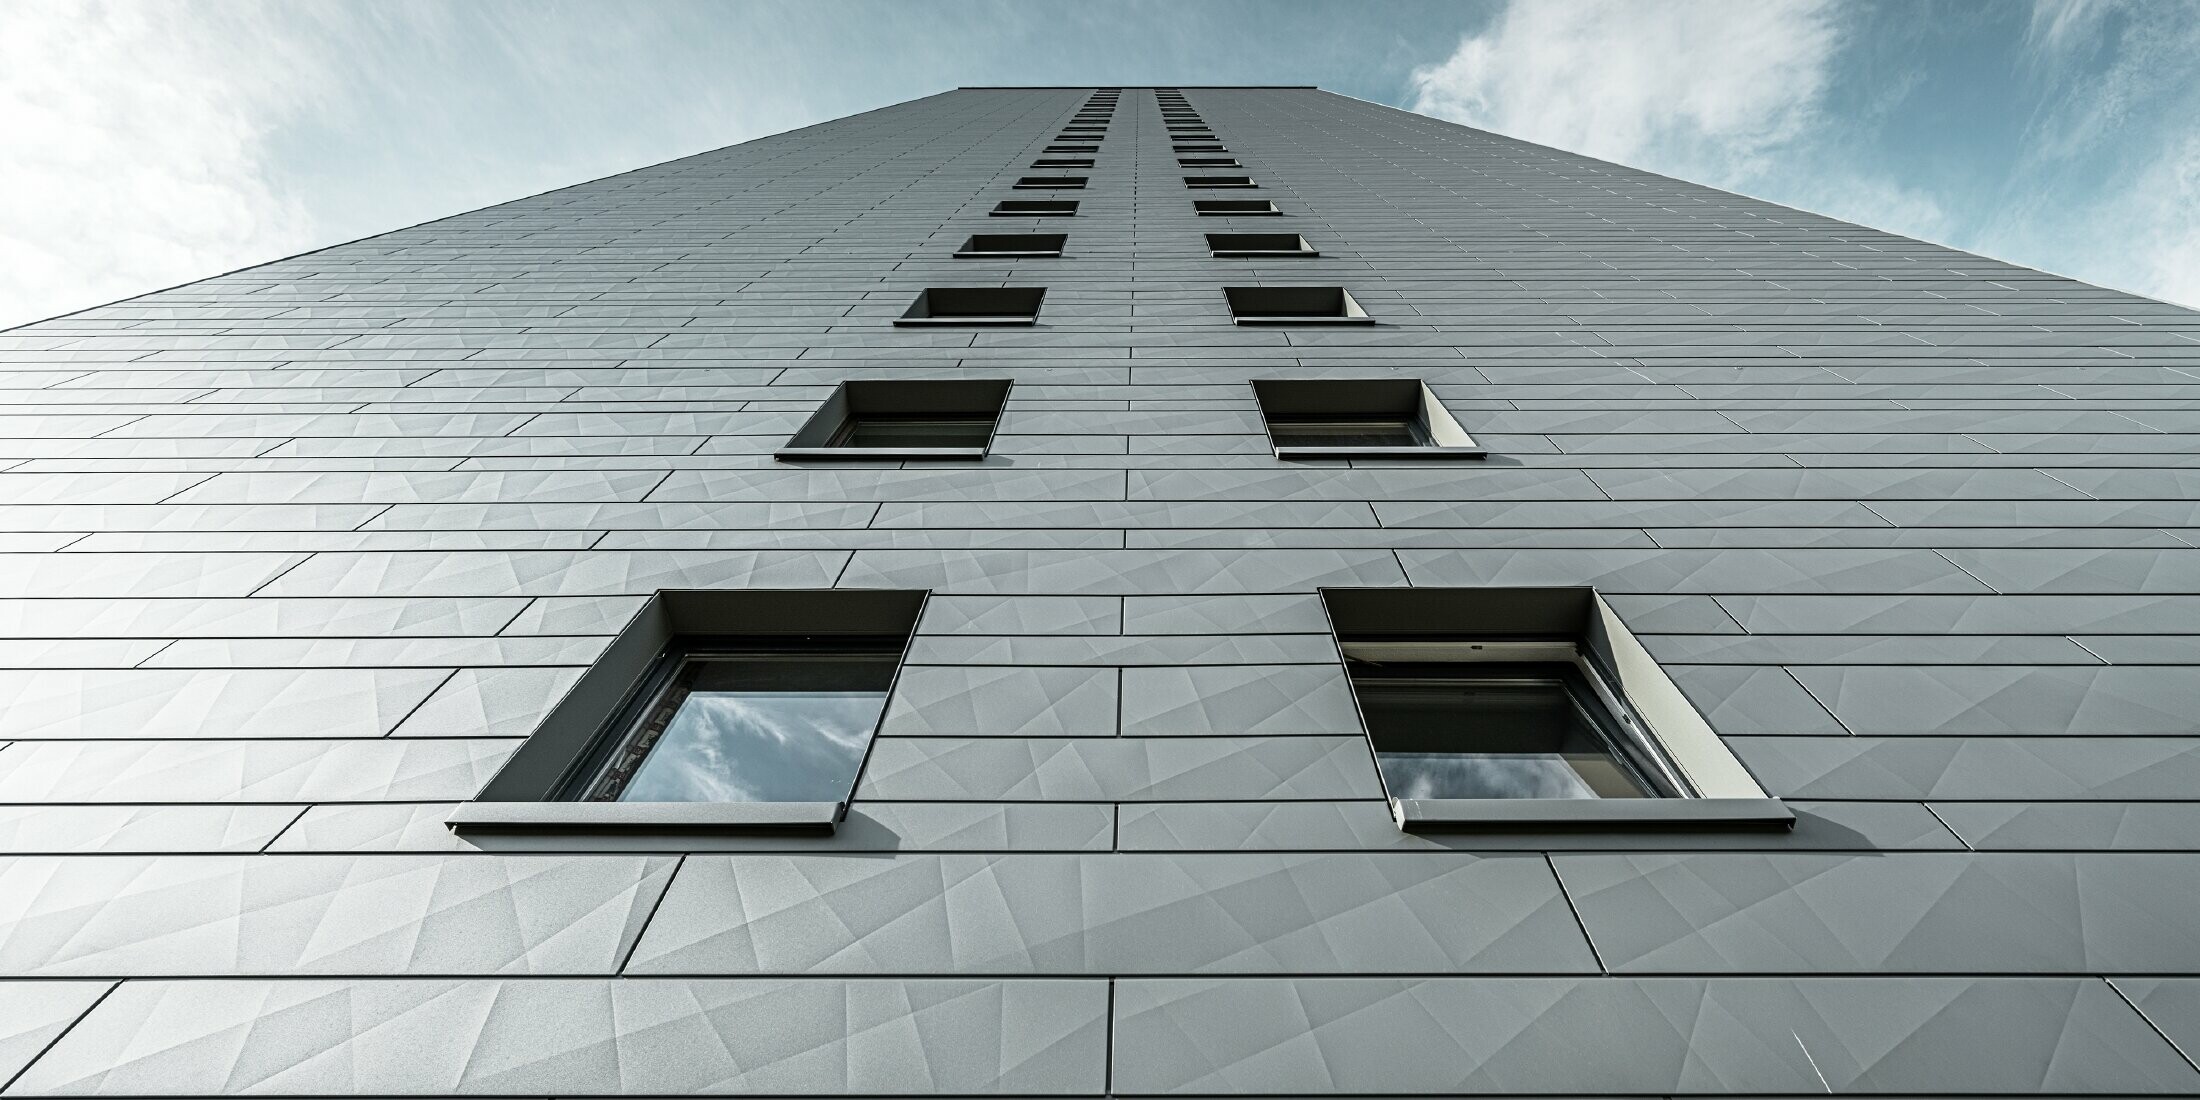 Pohled nahoru na fasádu vícepodlažní výškové budovy, fasáda je obložena horizontálními fasádními lamelami Siding.X od PREFA v barvě P.10 světle šedé